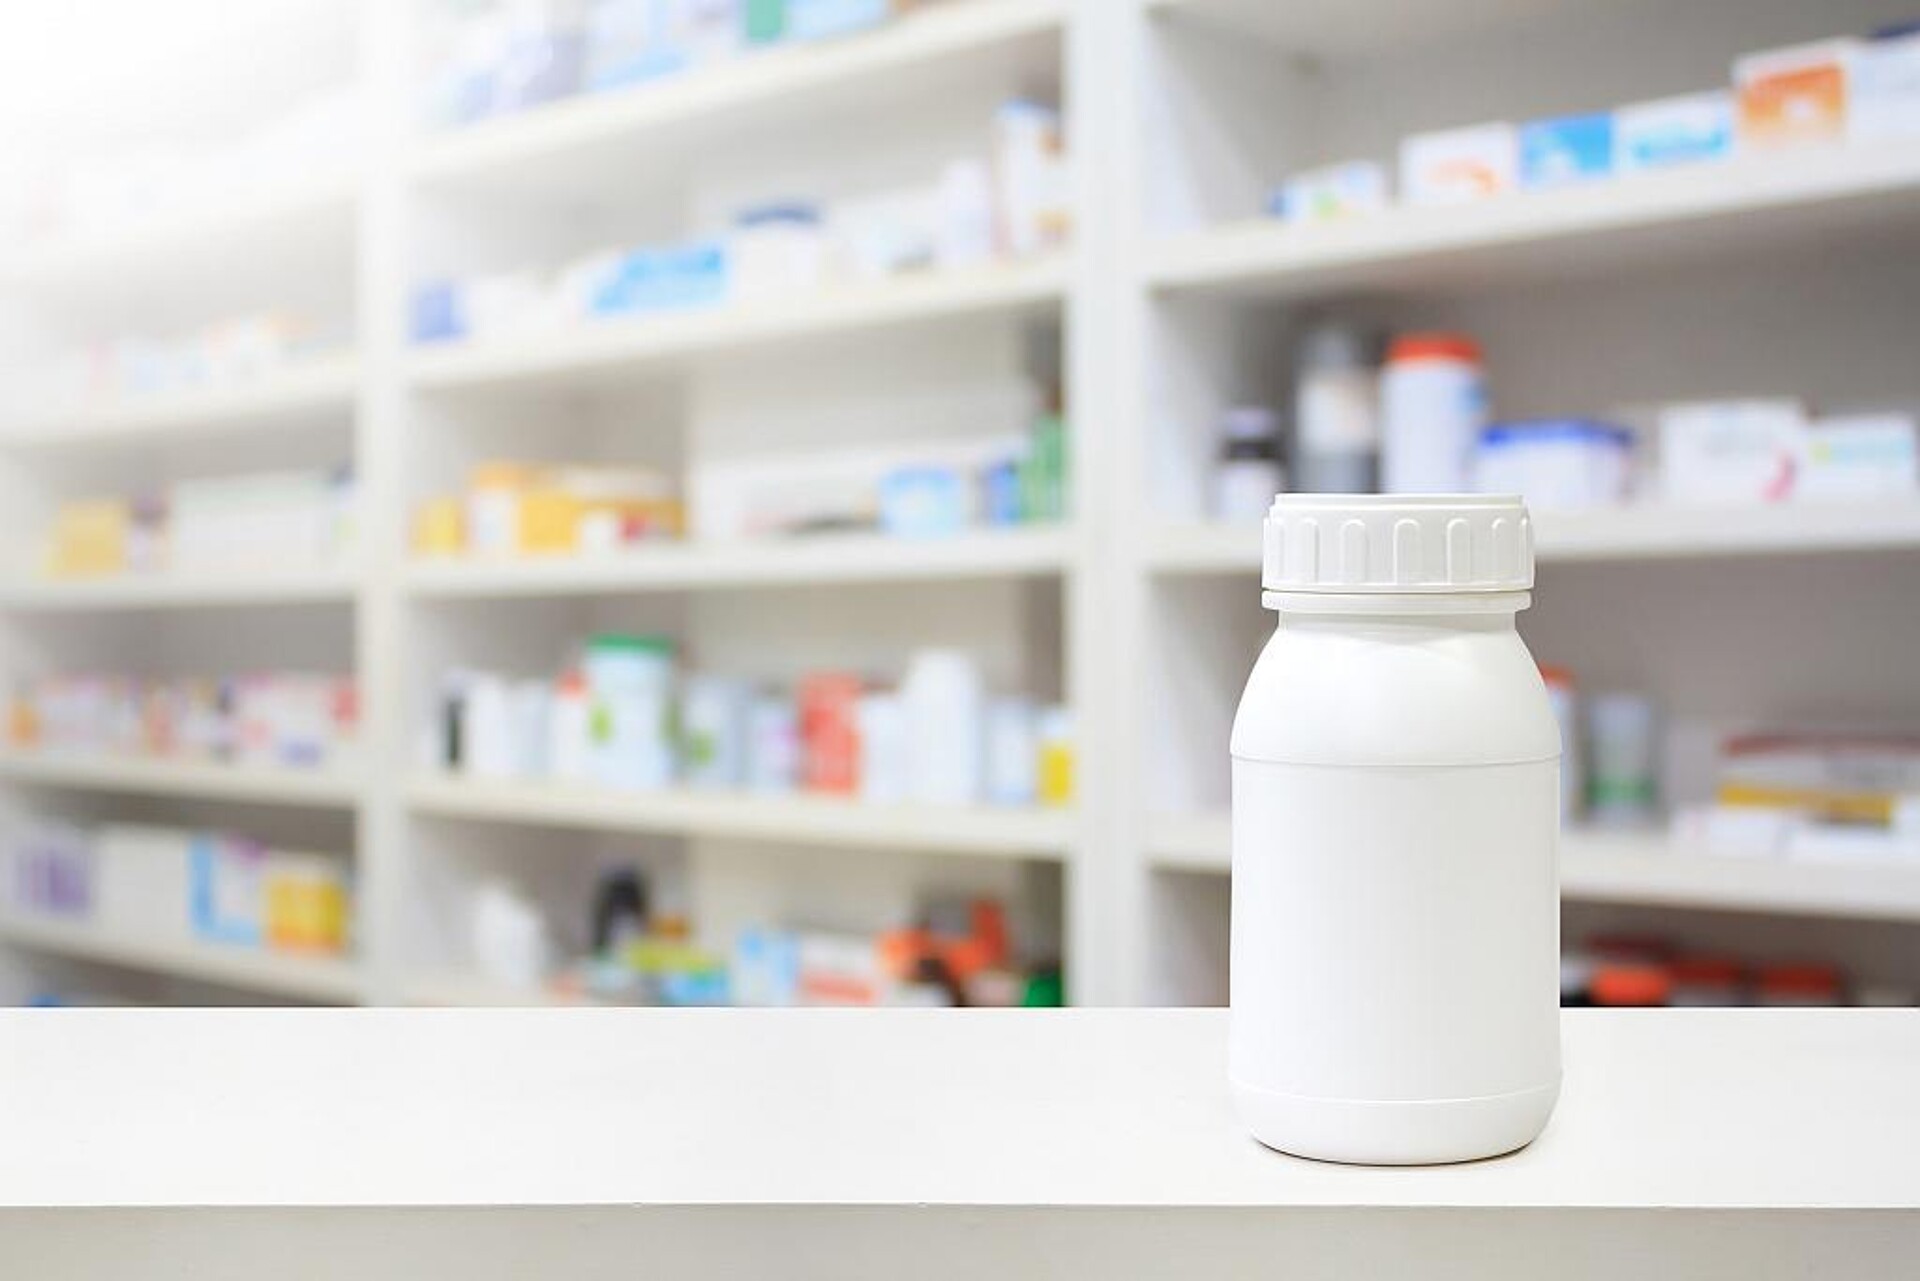 Ein neues Weißkonzentrat für pharmazeutische Verpackungen und Arzneibehältnisse ist eine weitere Produktneuheit. (Foto: Adobe Stock/Piman Khrutmuang)